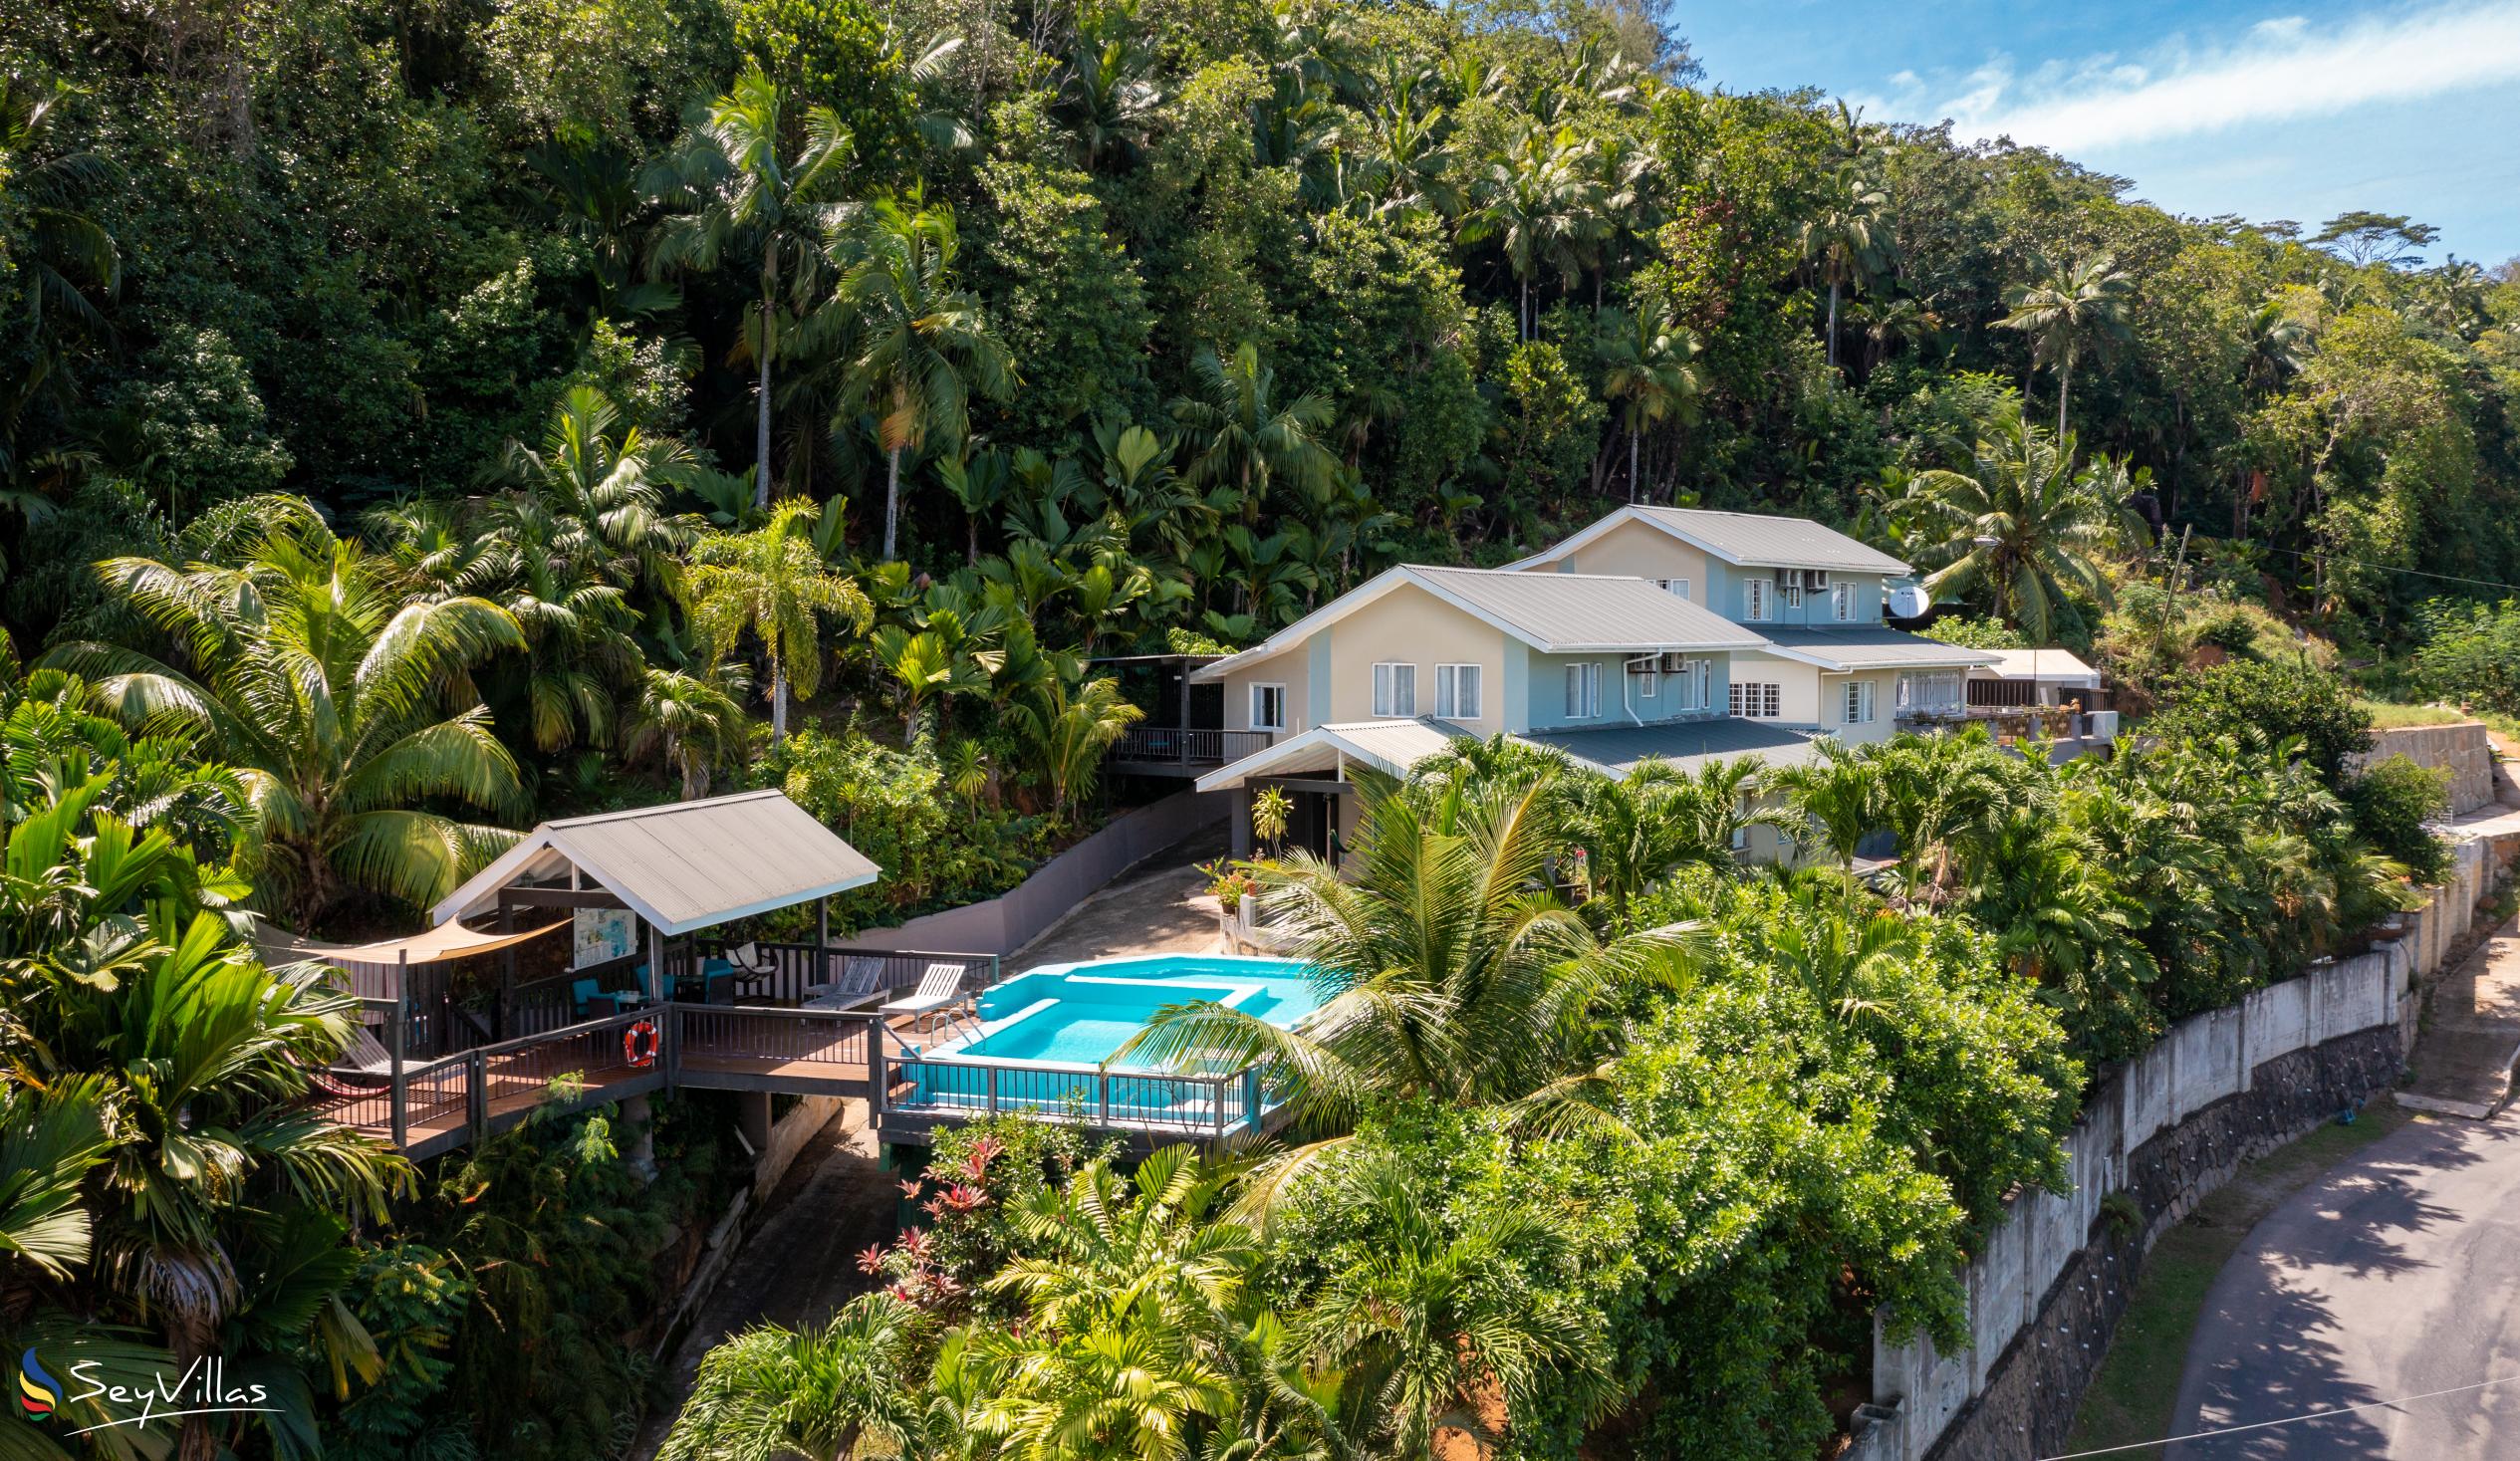 Photo 2: Stephna Residence - Outdoor area - Mahé (Seychelles)